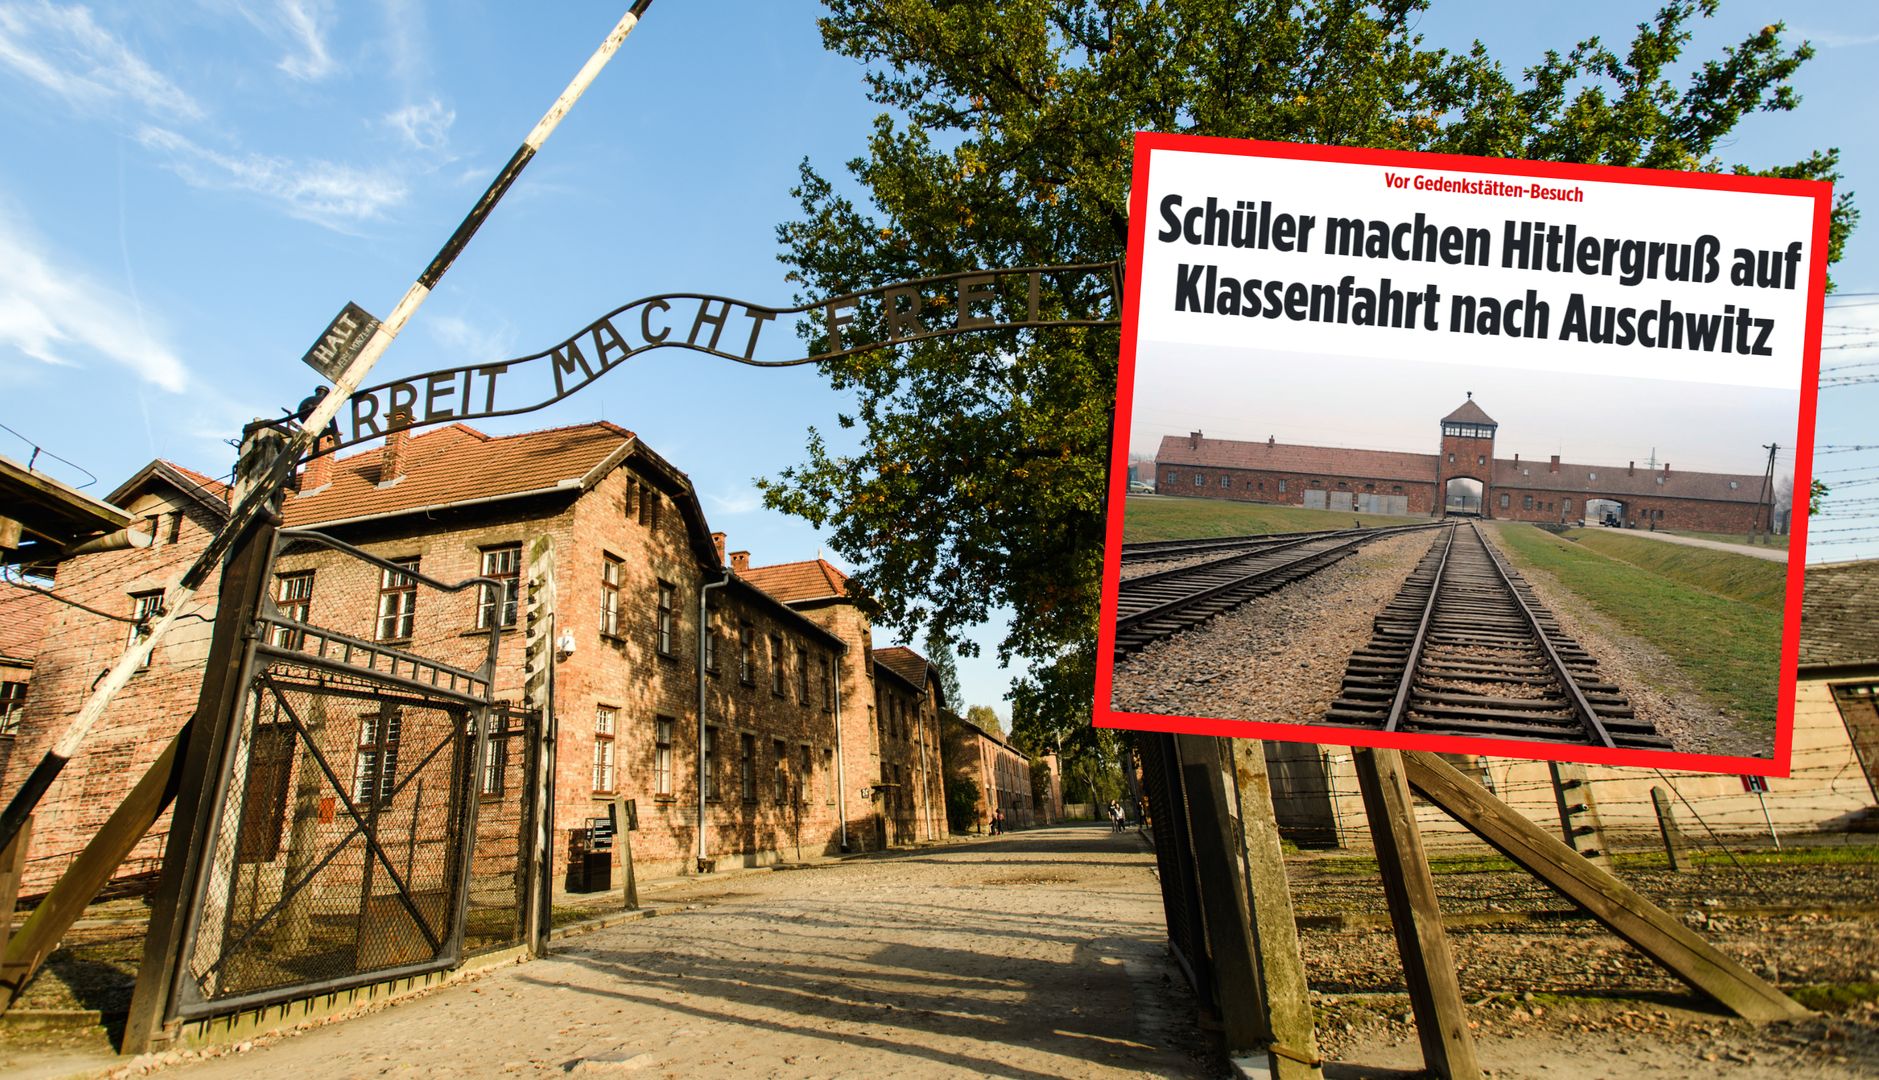 Młodzi Niemcy pojechali do Auschwitz. "Szokujący skandal"